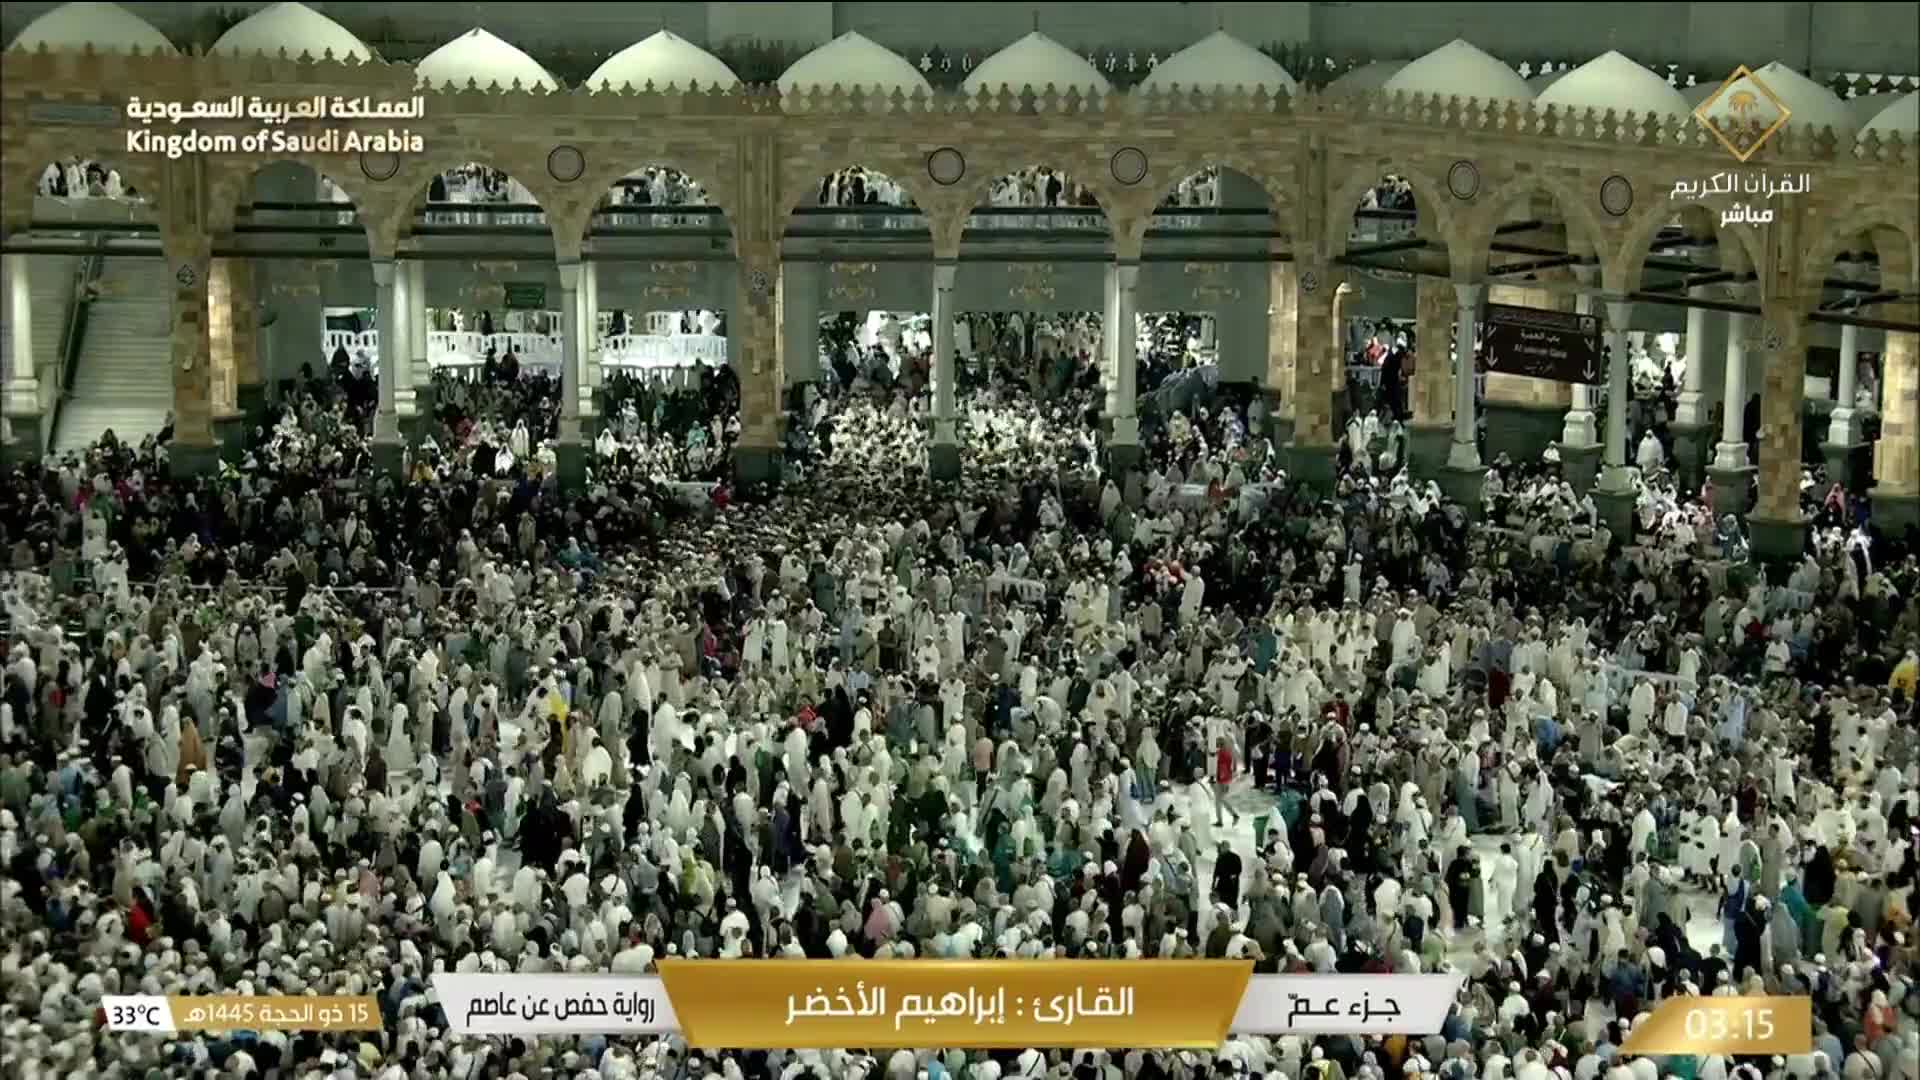 La Mecque Di. 03:36